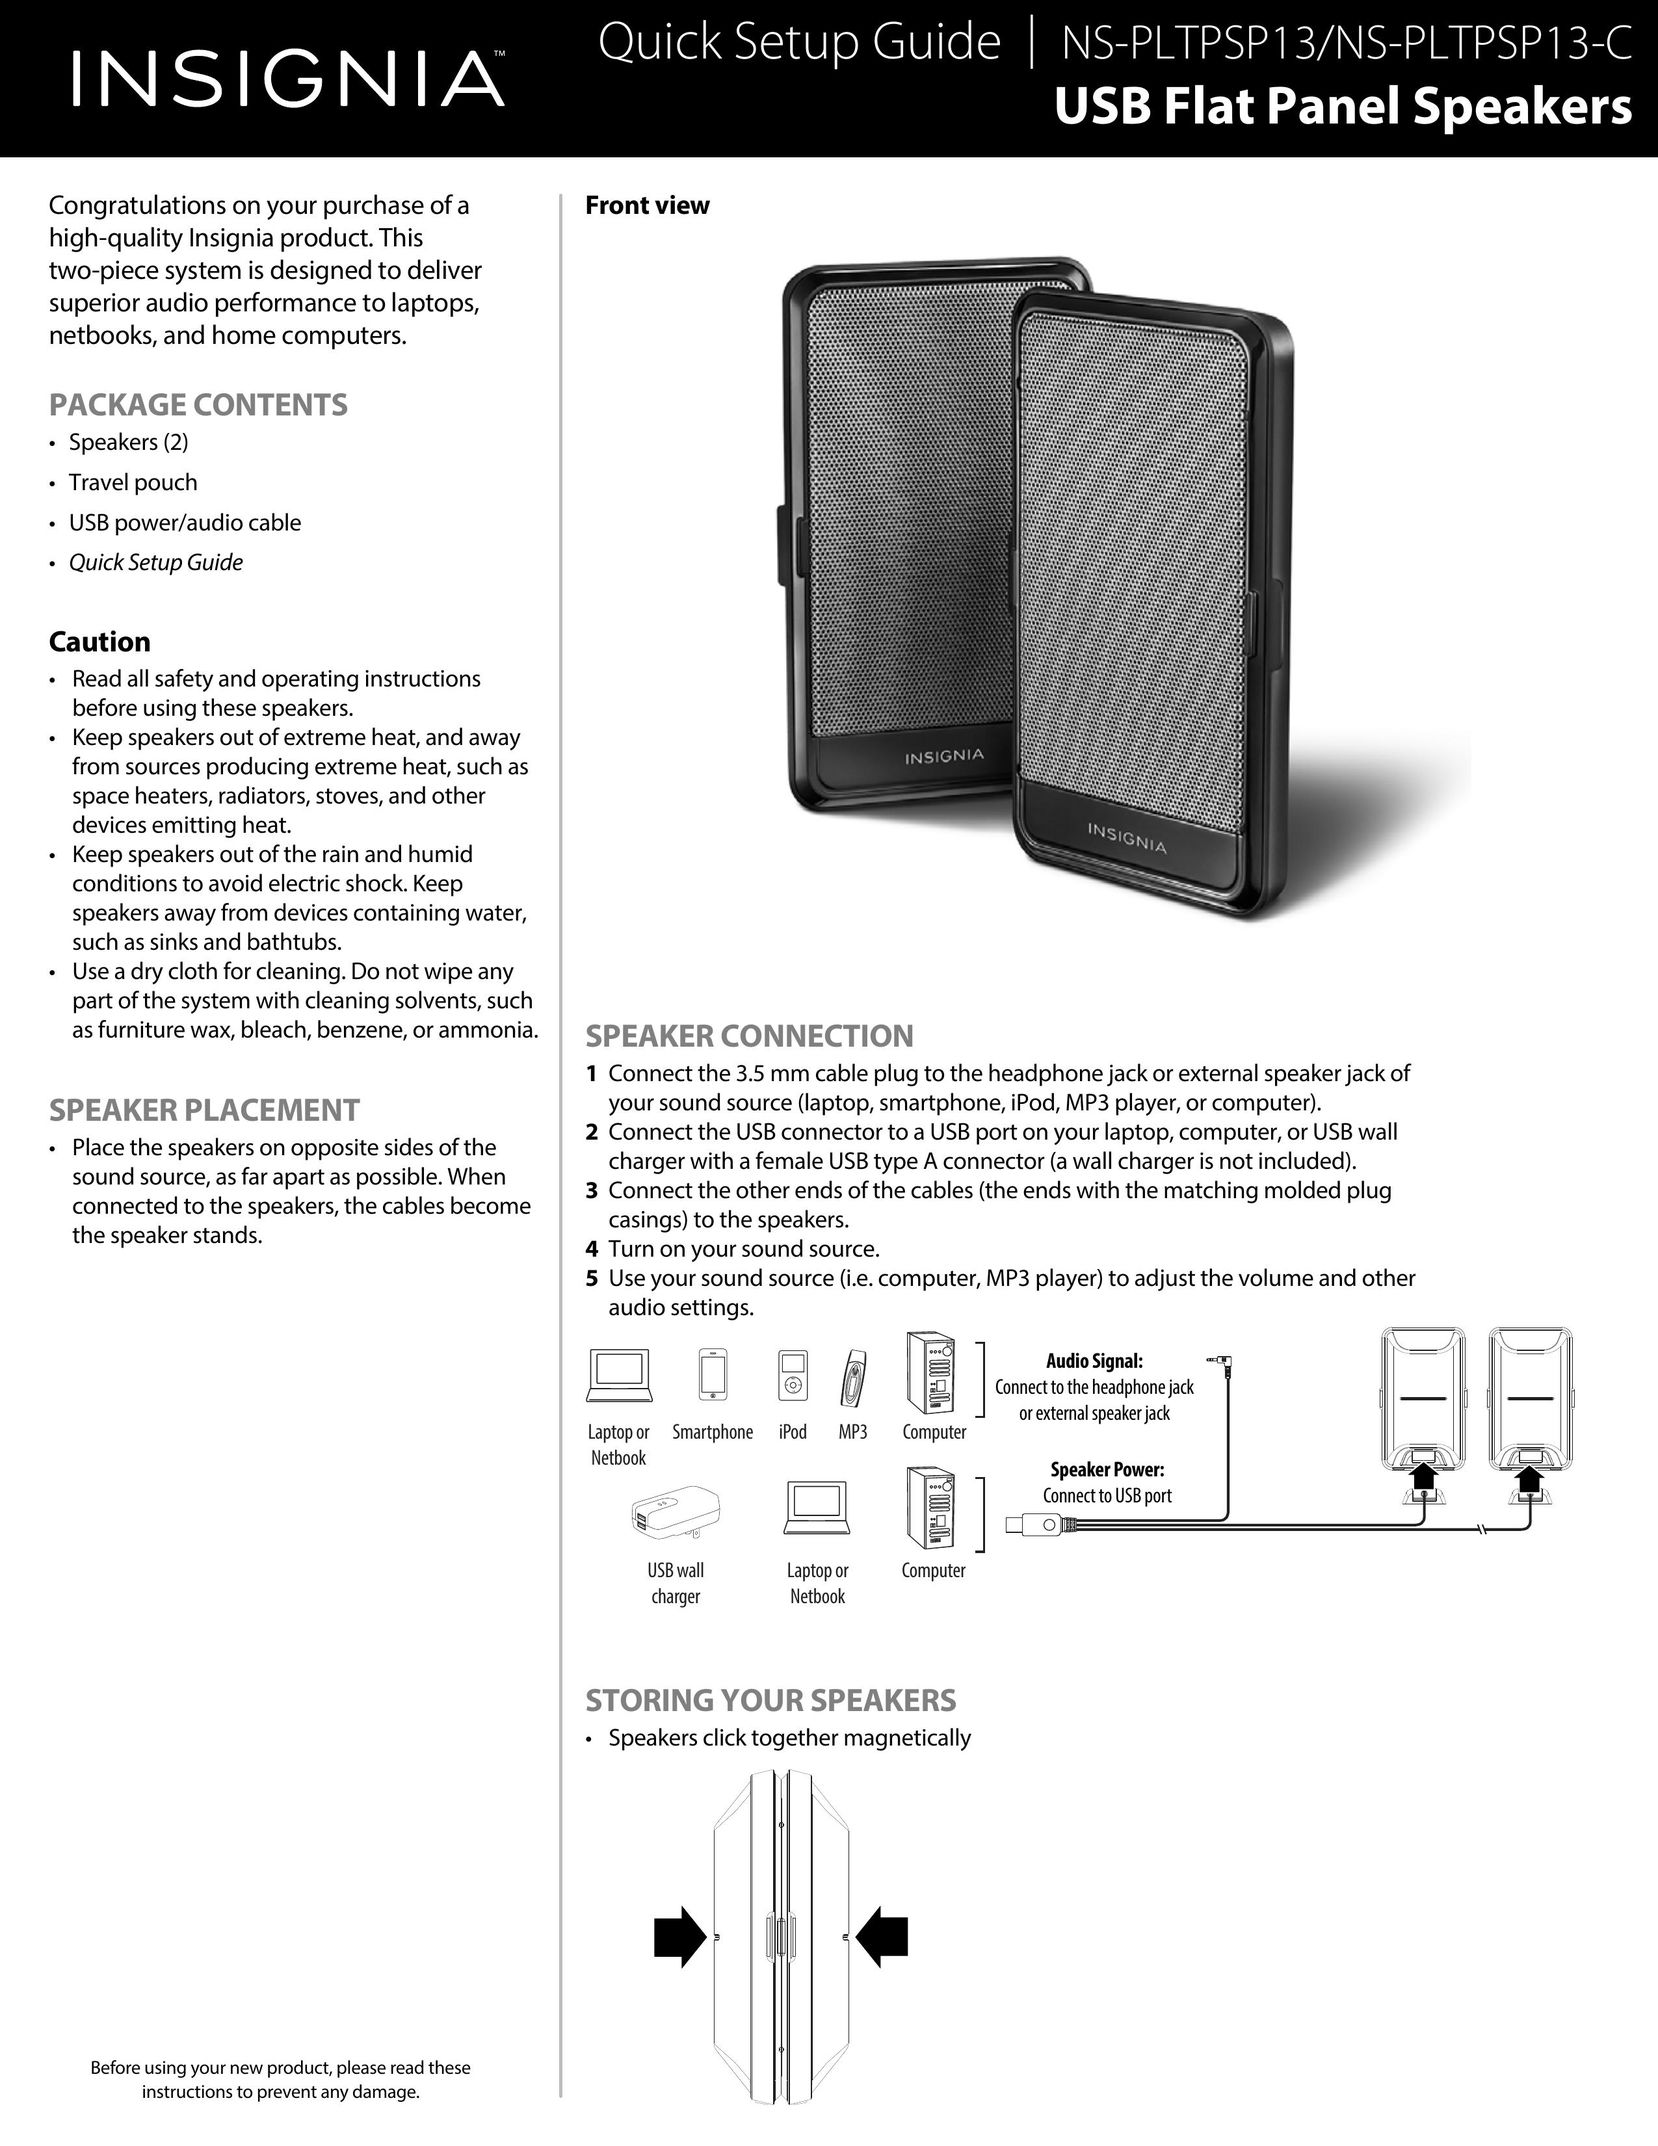 Insignia NS-PLTPSP13 Car Speaker User Manual